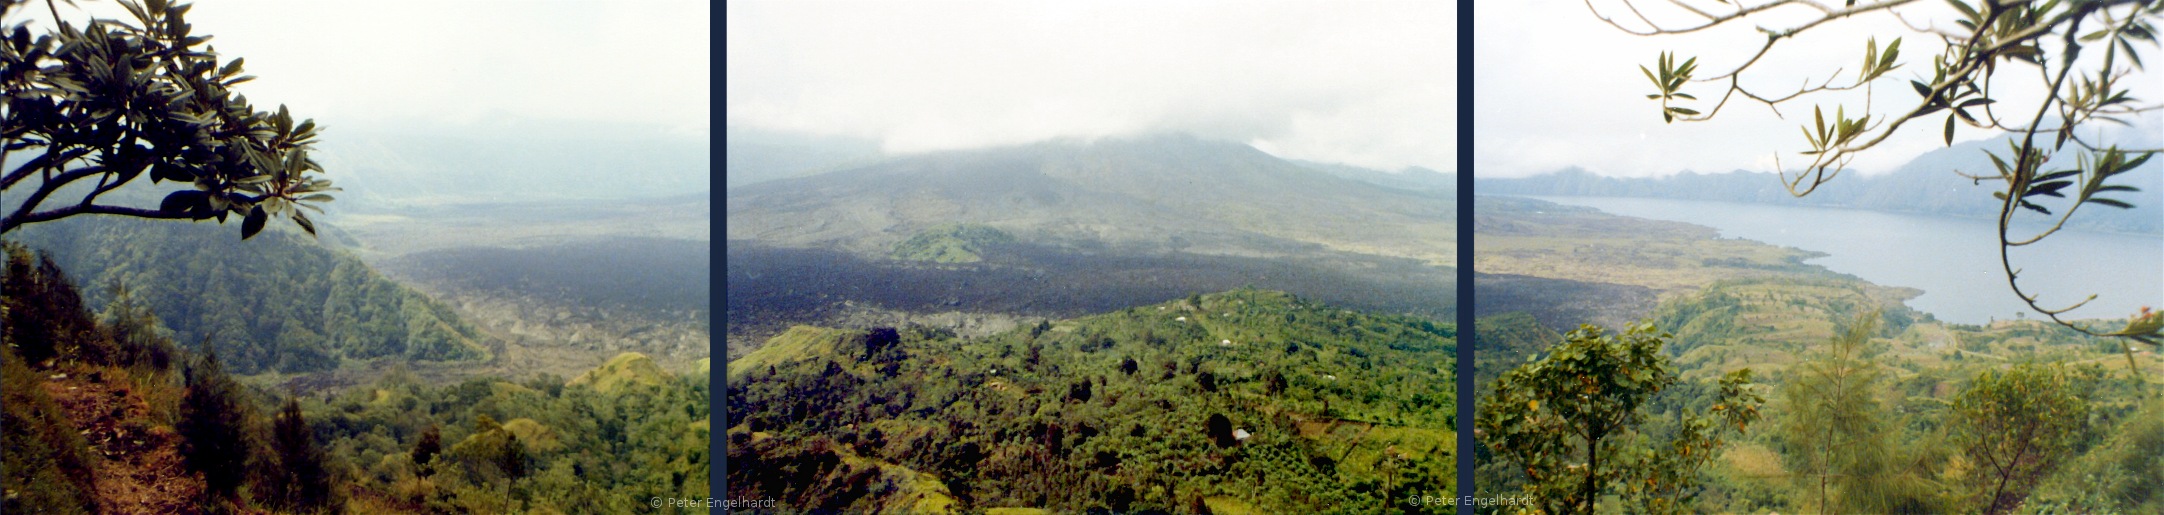 Blick auf den Krater des Vulkans Gunung Batur